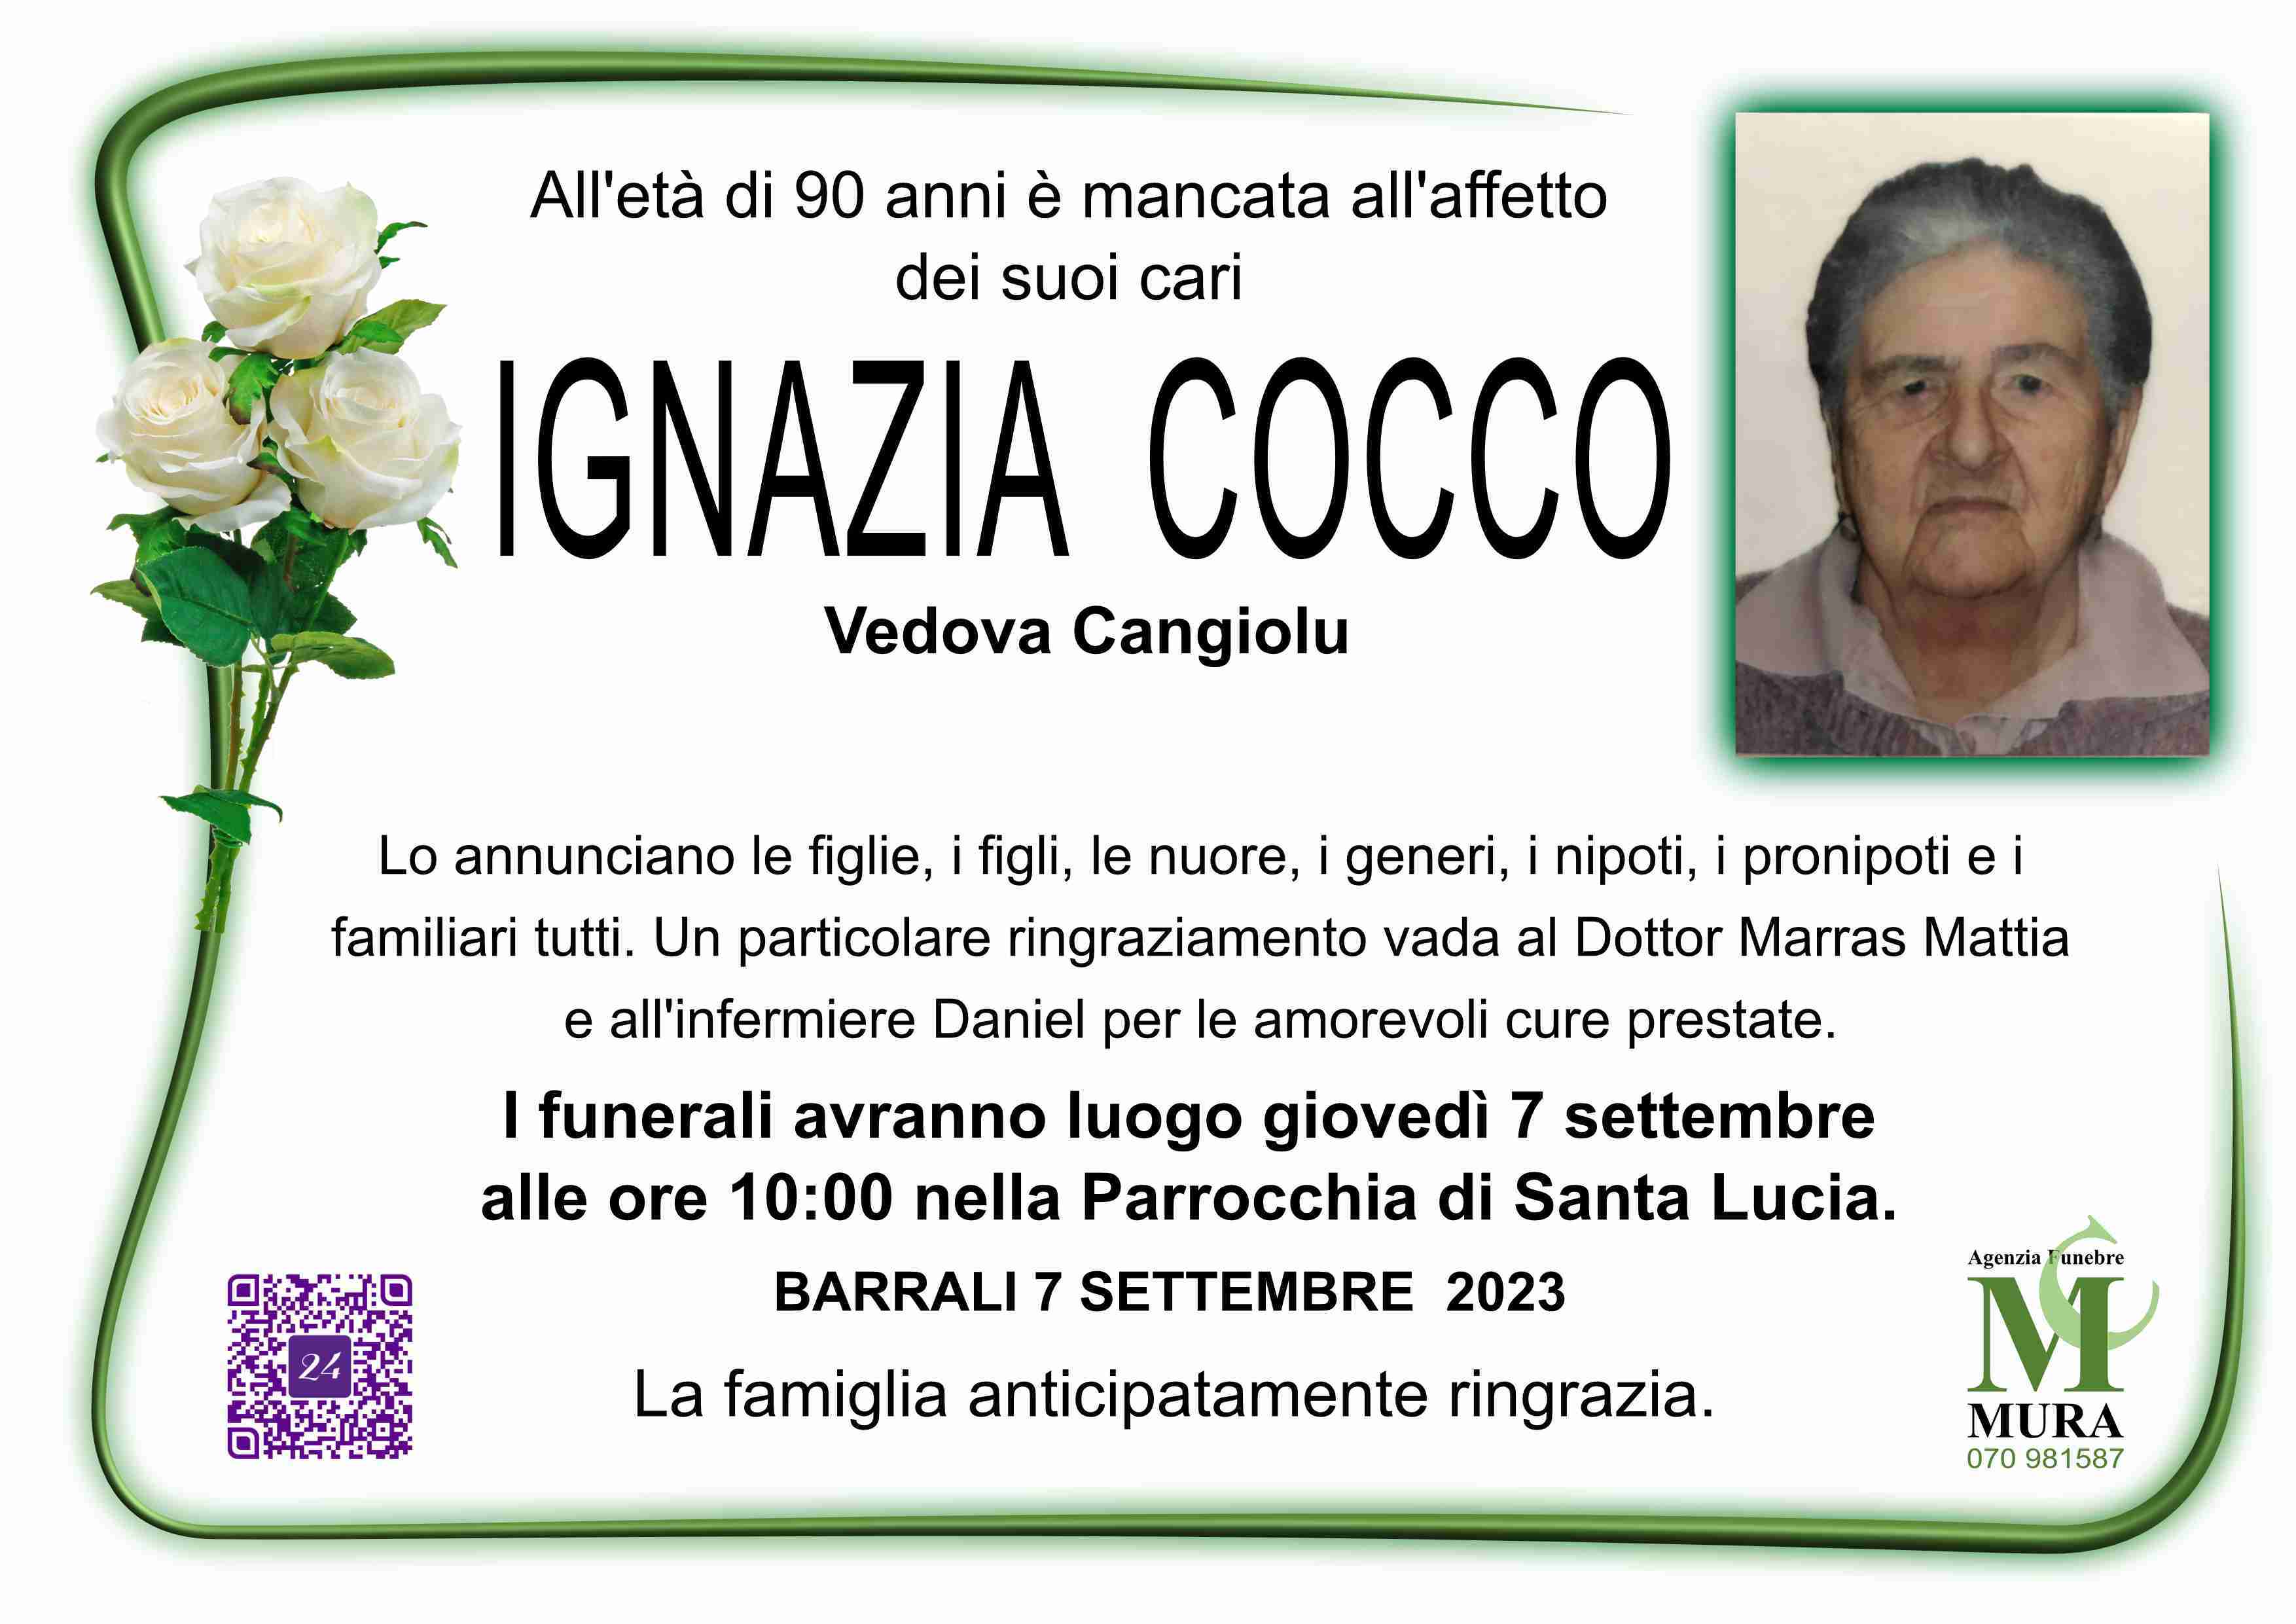 Ignazia Cocco